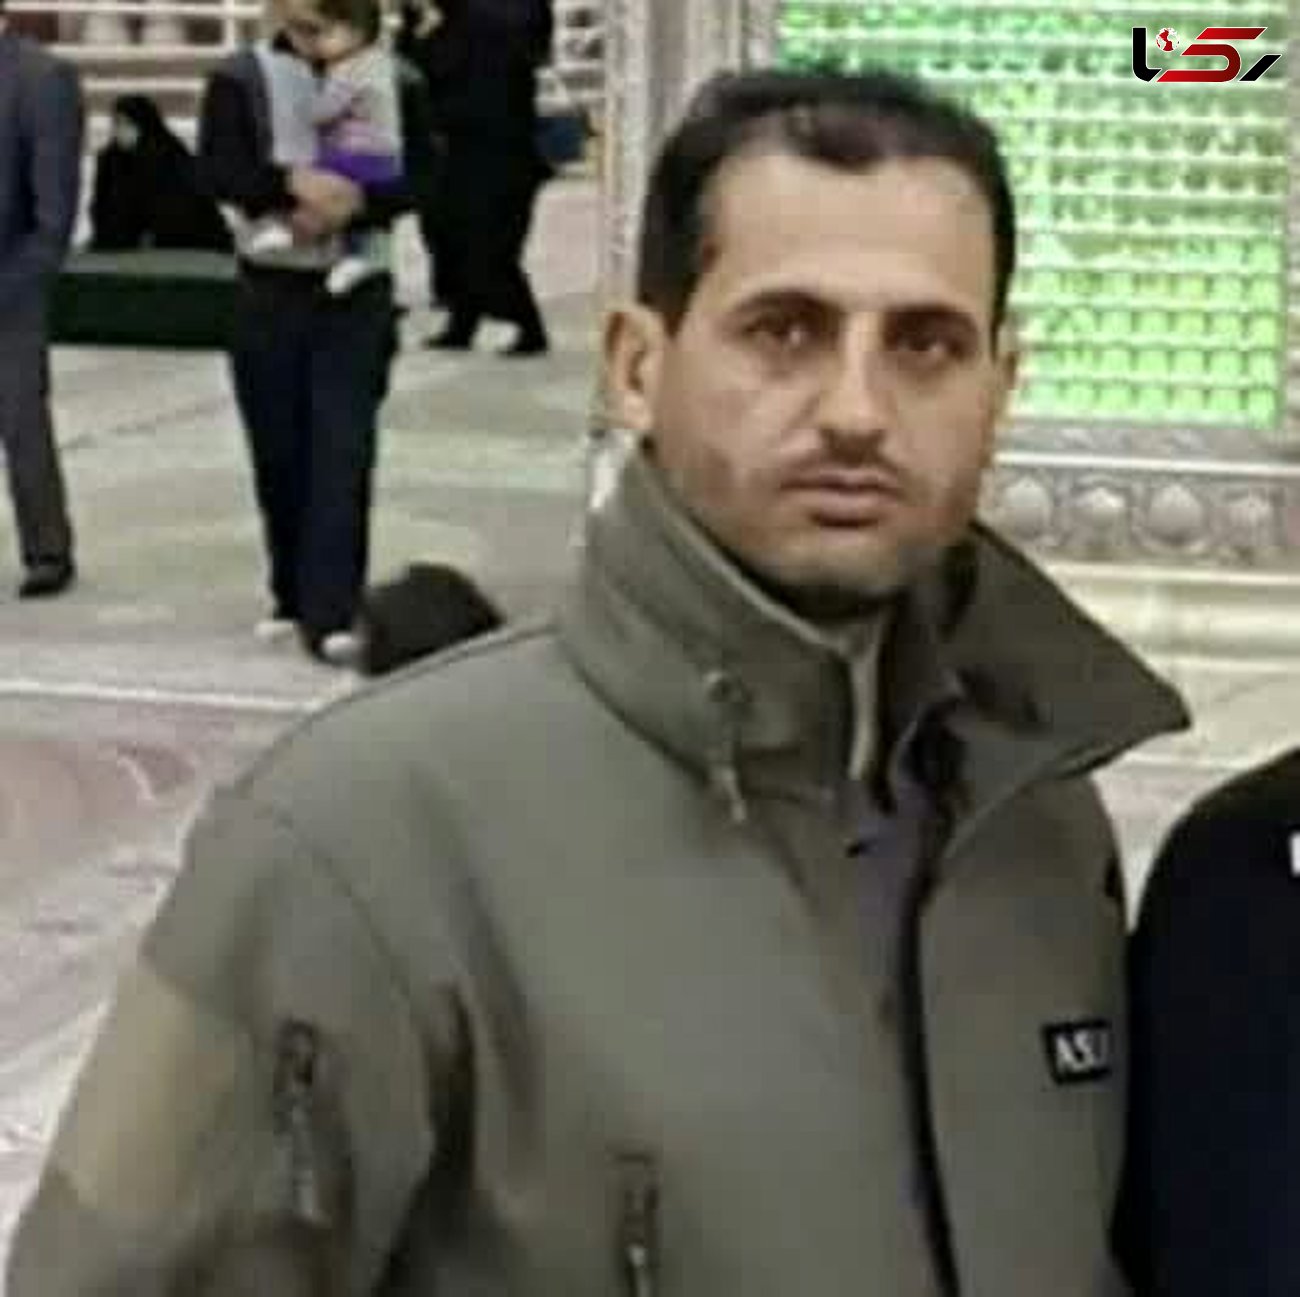 دستگیری قاتلان شهید مجید یوسفی / 2 متهم اعتراف کردند  + عکس